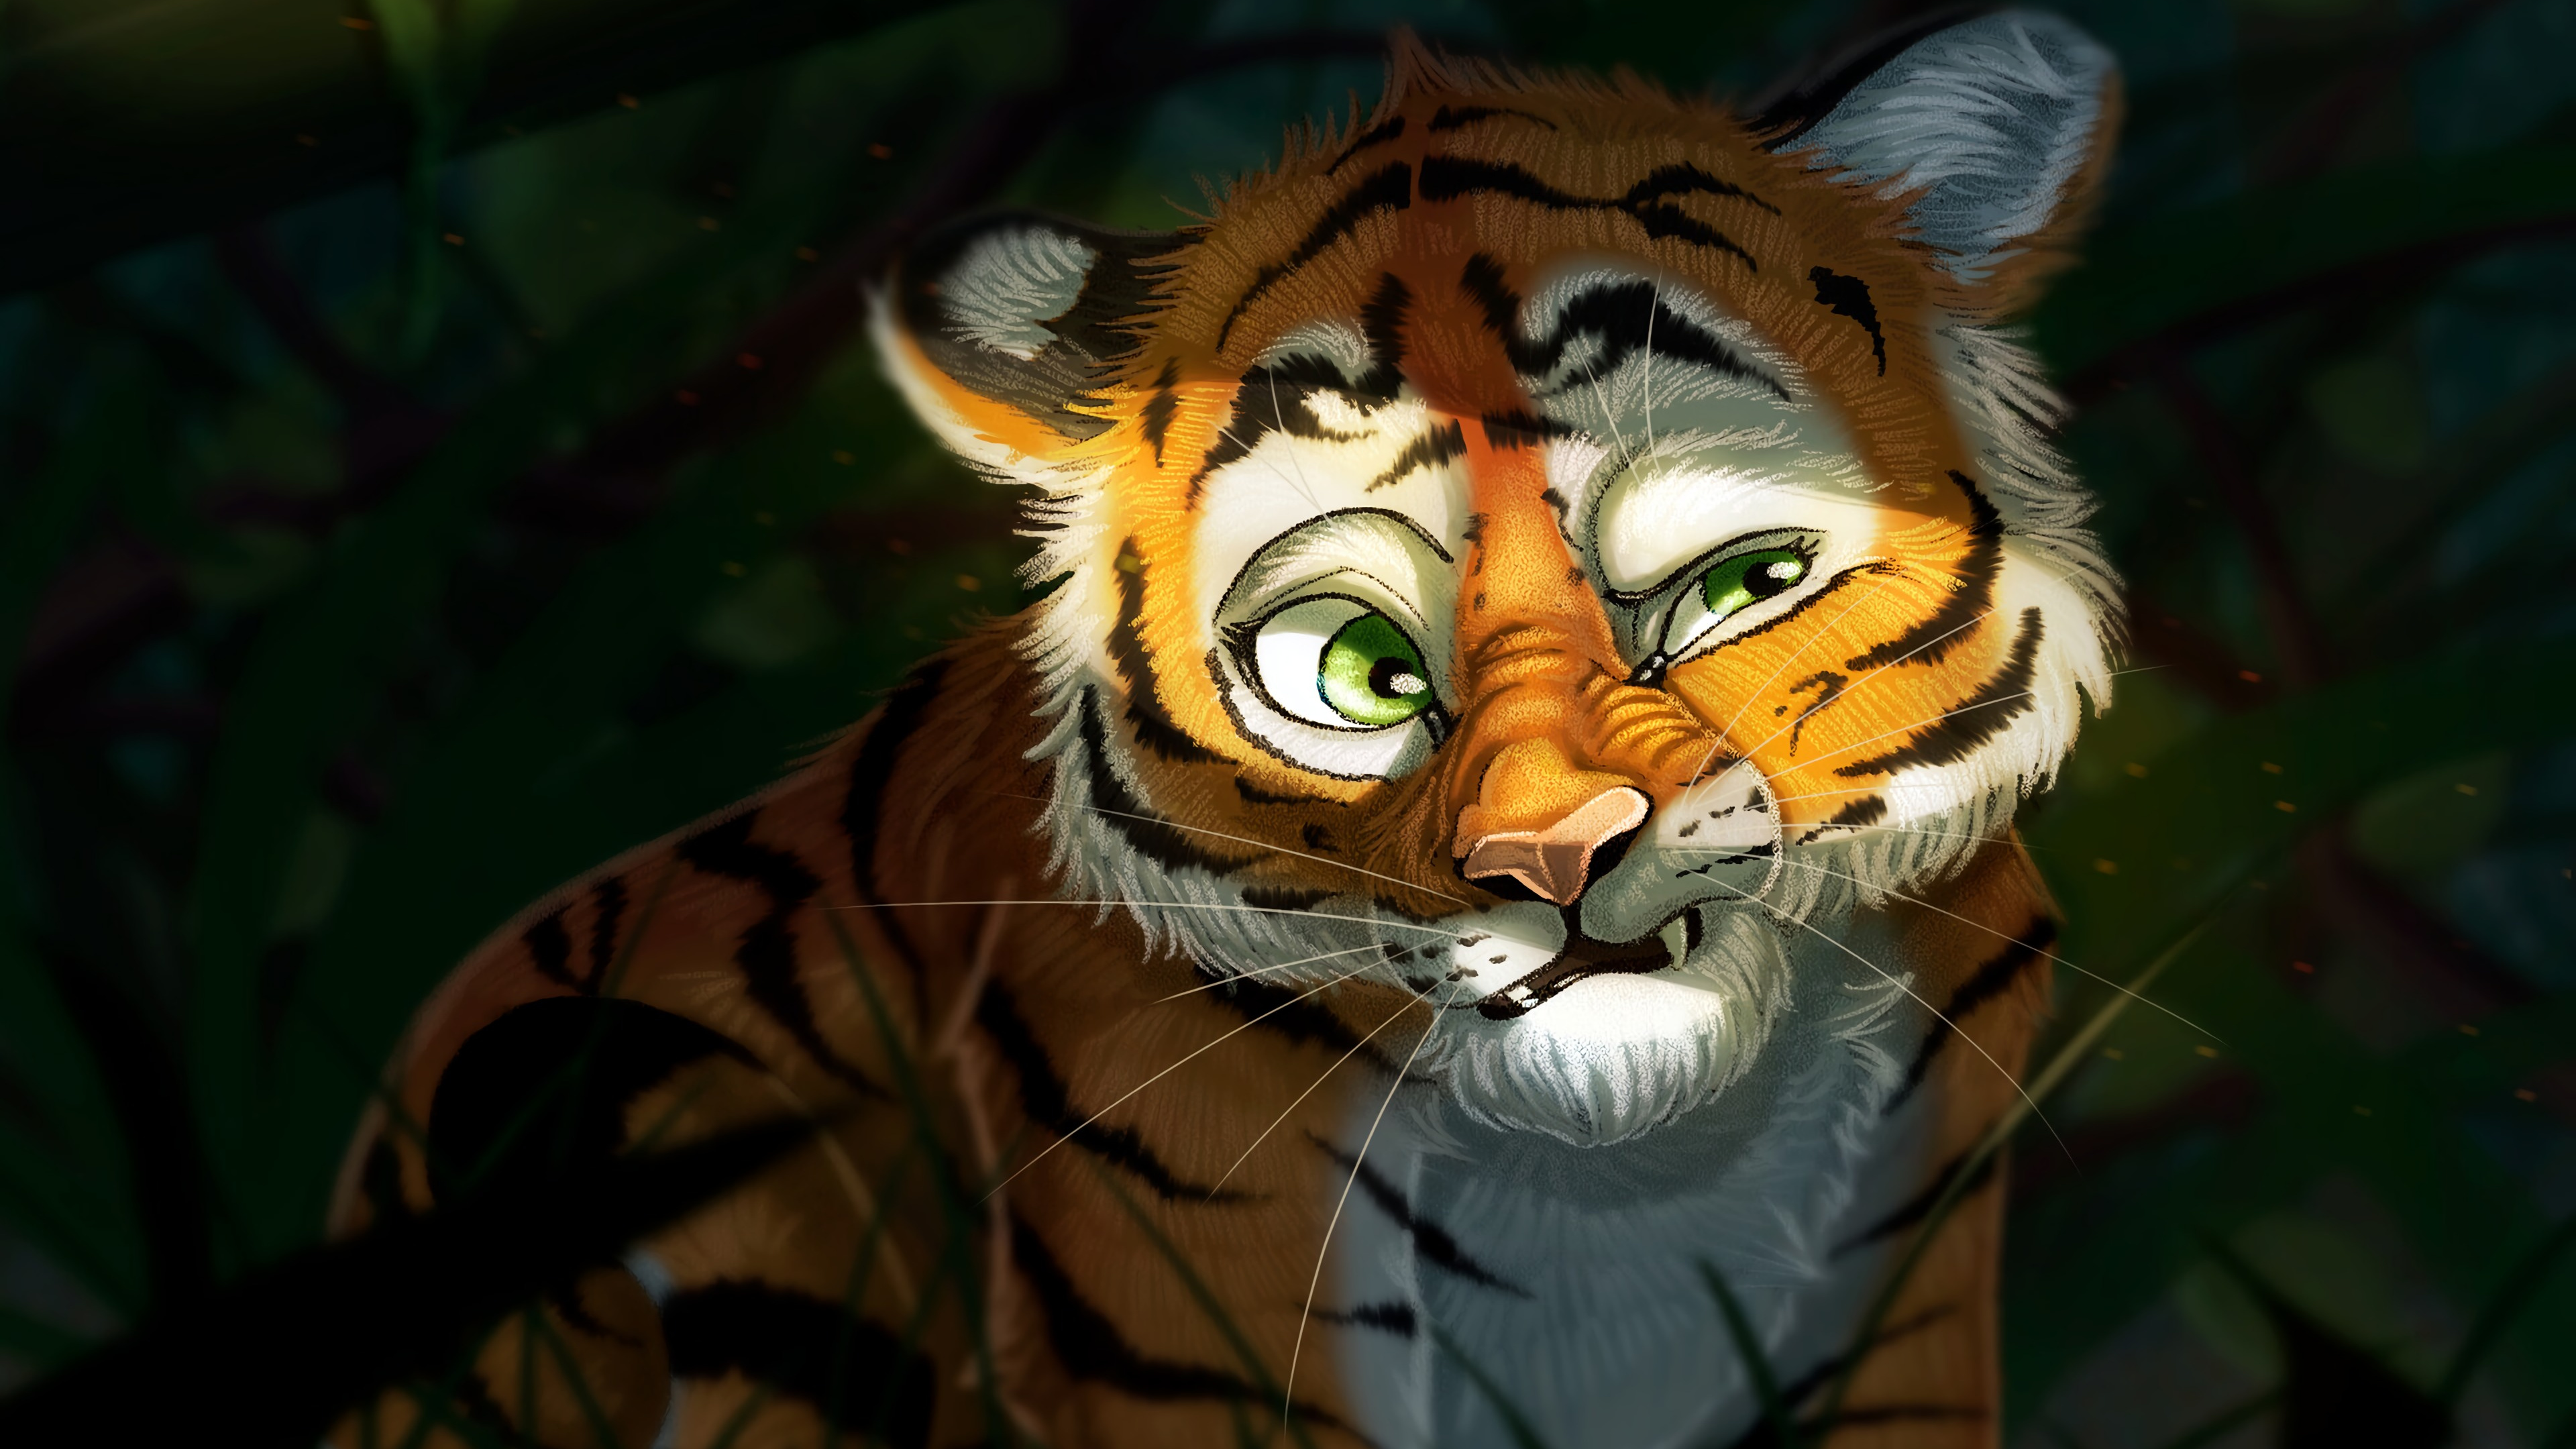 老虎, 艺术, 孟加拉虎, 野生动物, 猫科 壁纸 3840x2160 允许